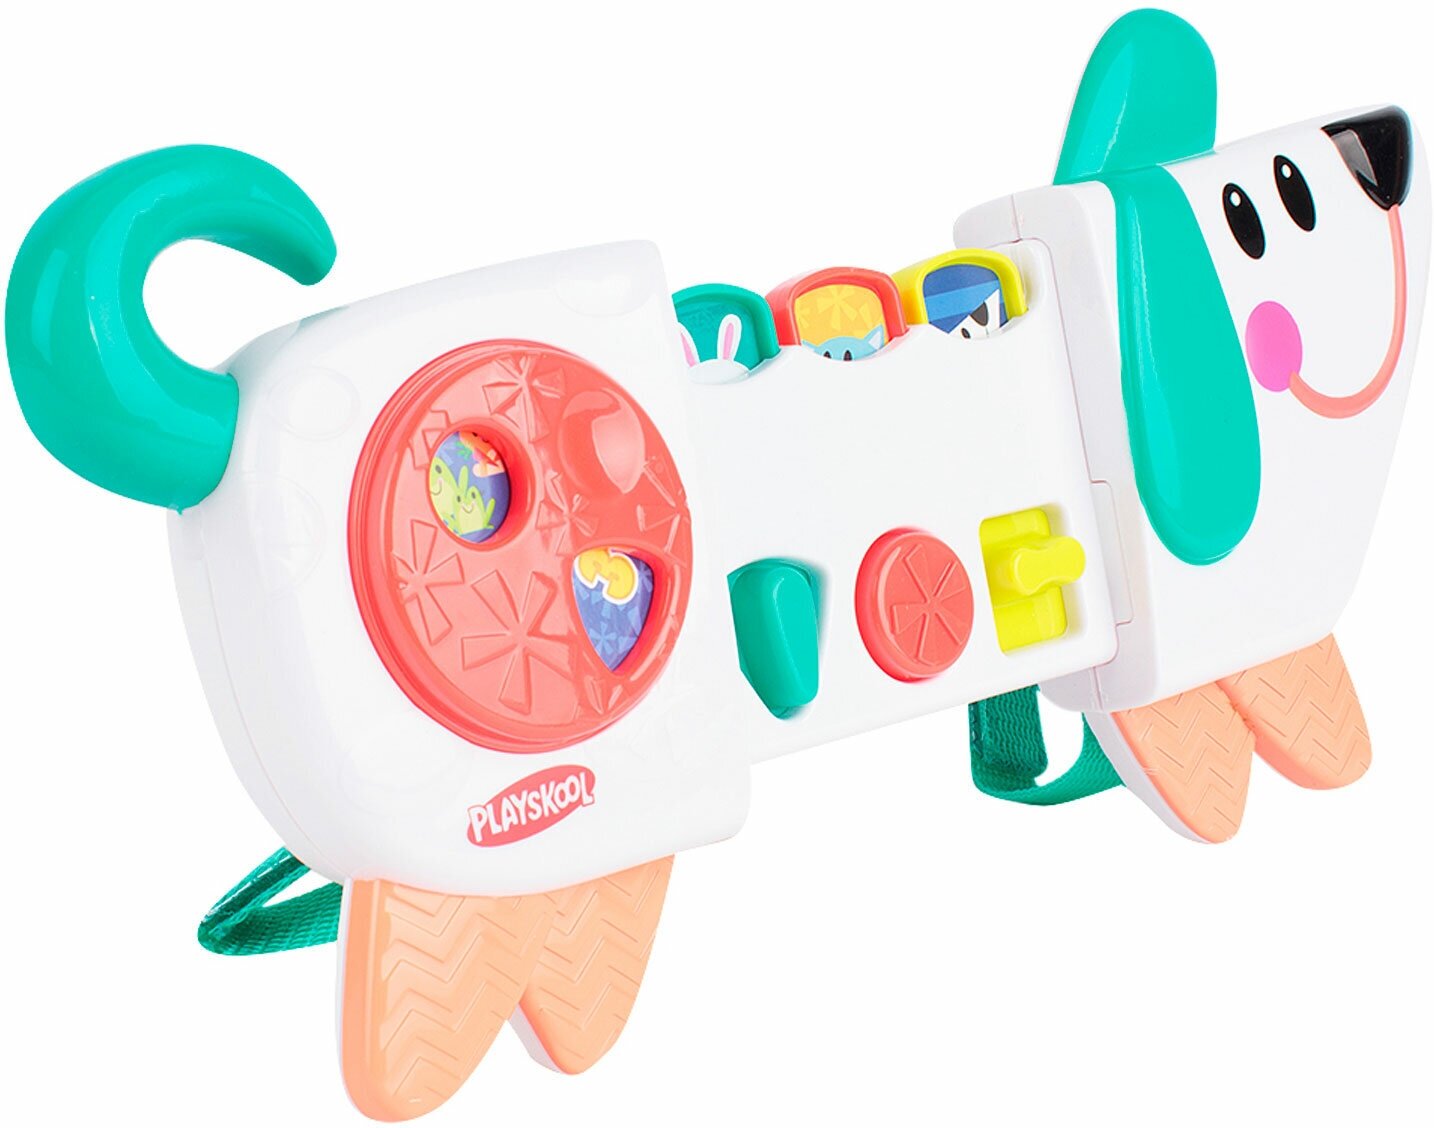 Развивающие игрушки для малышей Hasbro Playskool - фото №15